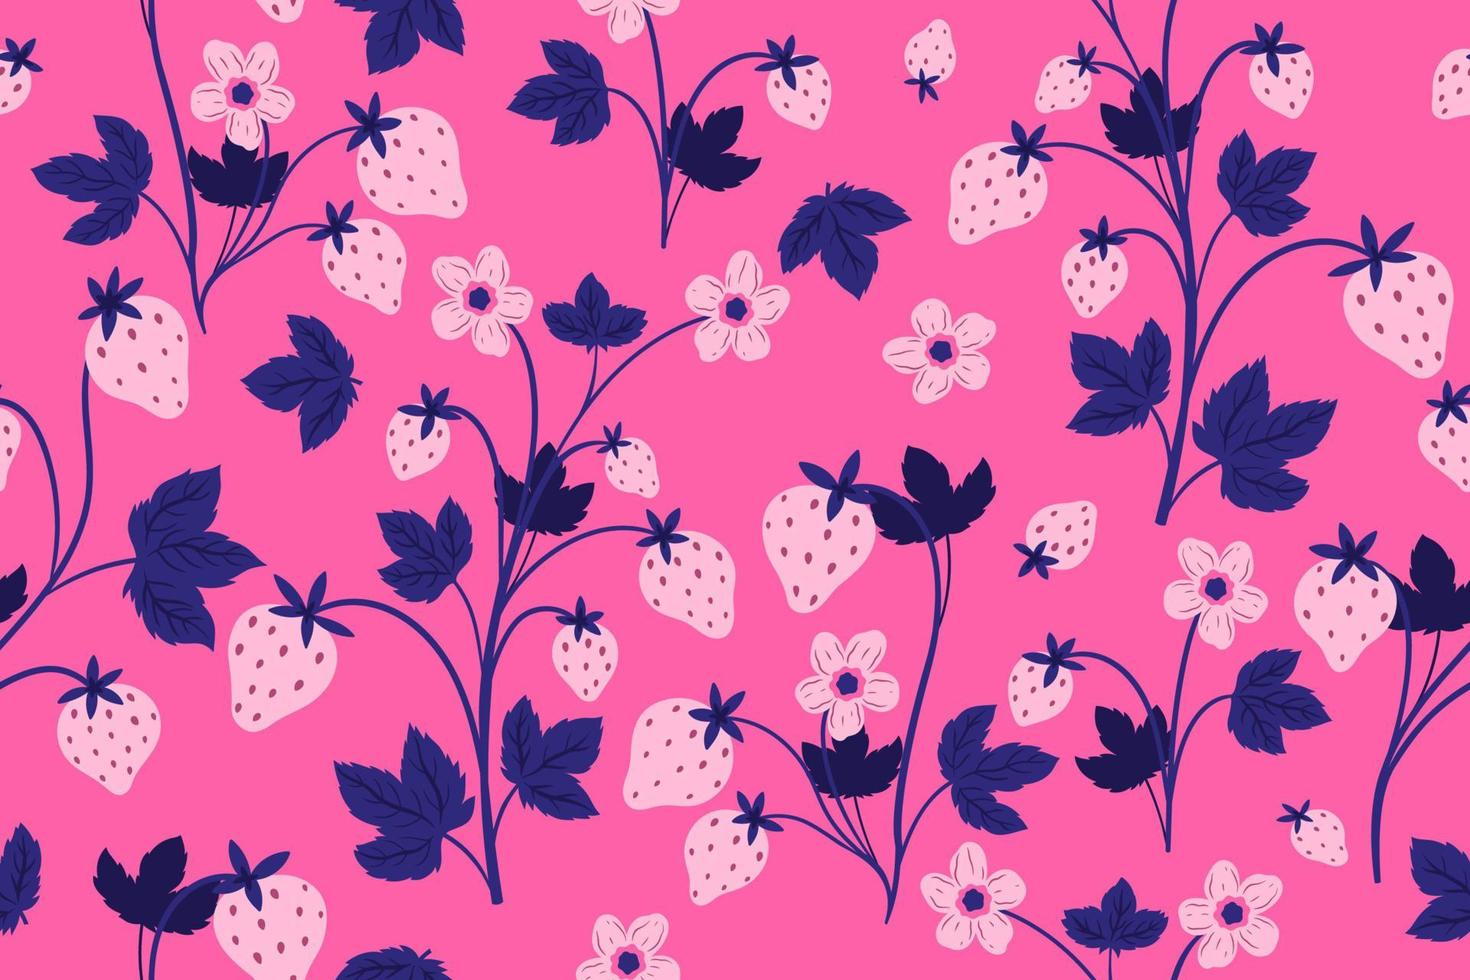 sömlös mönster med jordgubbar, blommor och löv på en rosa bakgrund. vektor grafik.